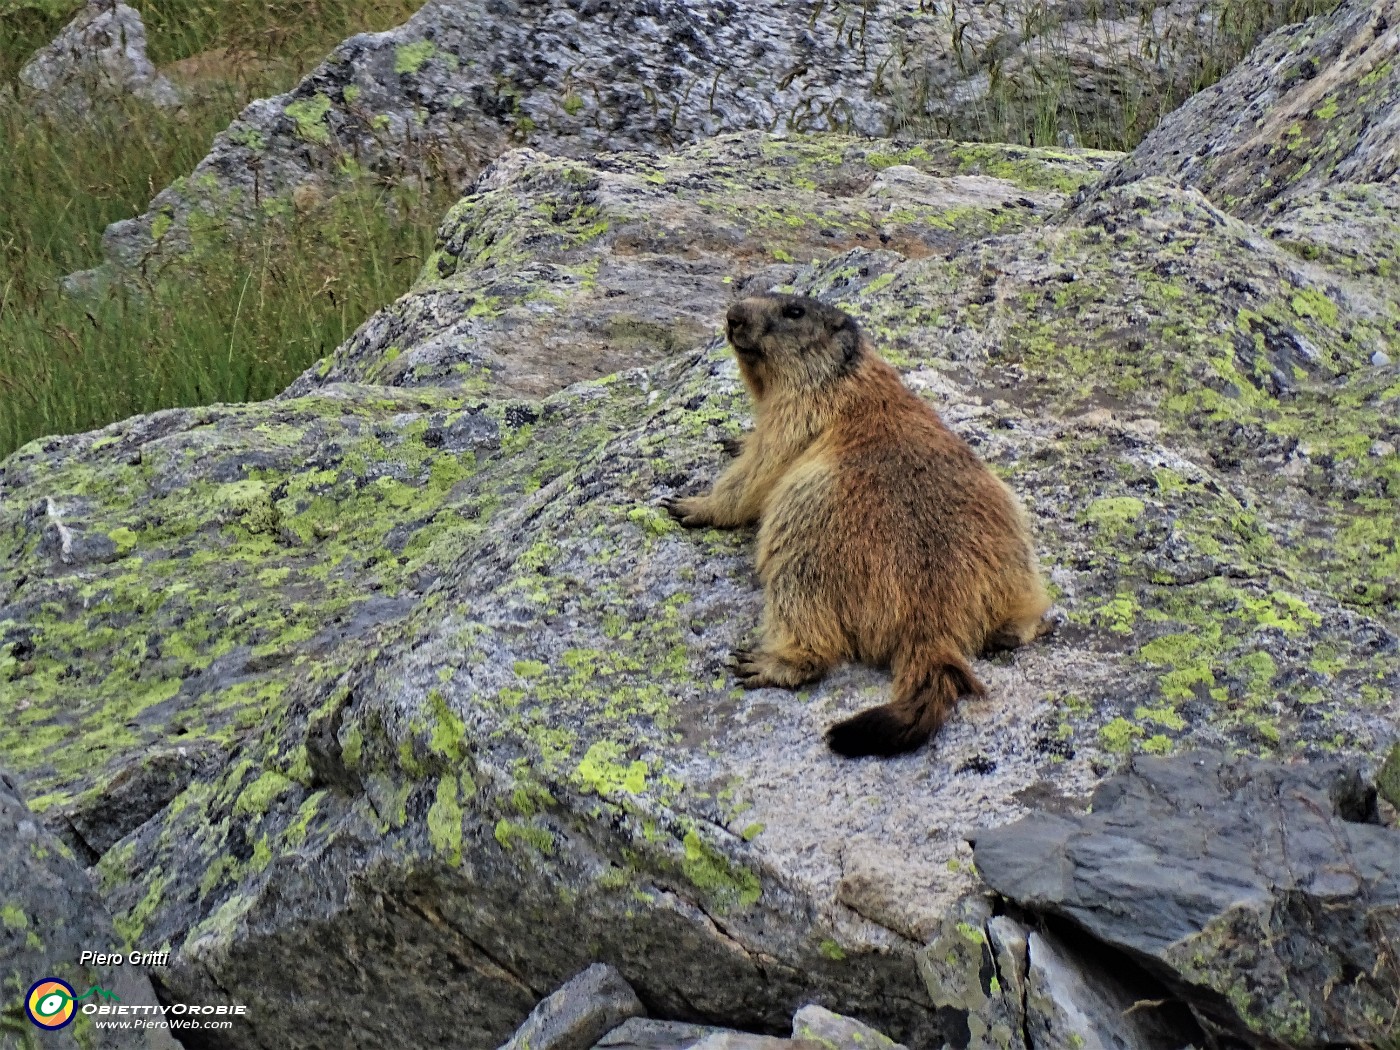 54 Marmottona  in relax su roccione  al Lago del Diavolo .JPG